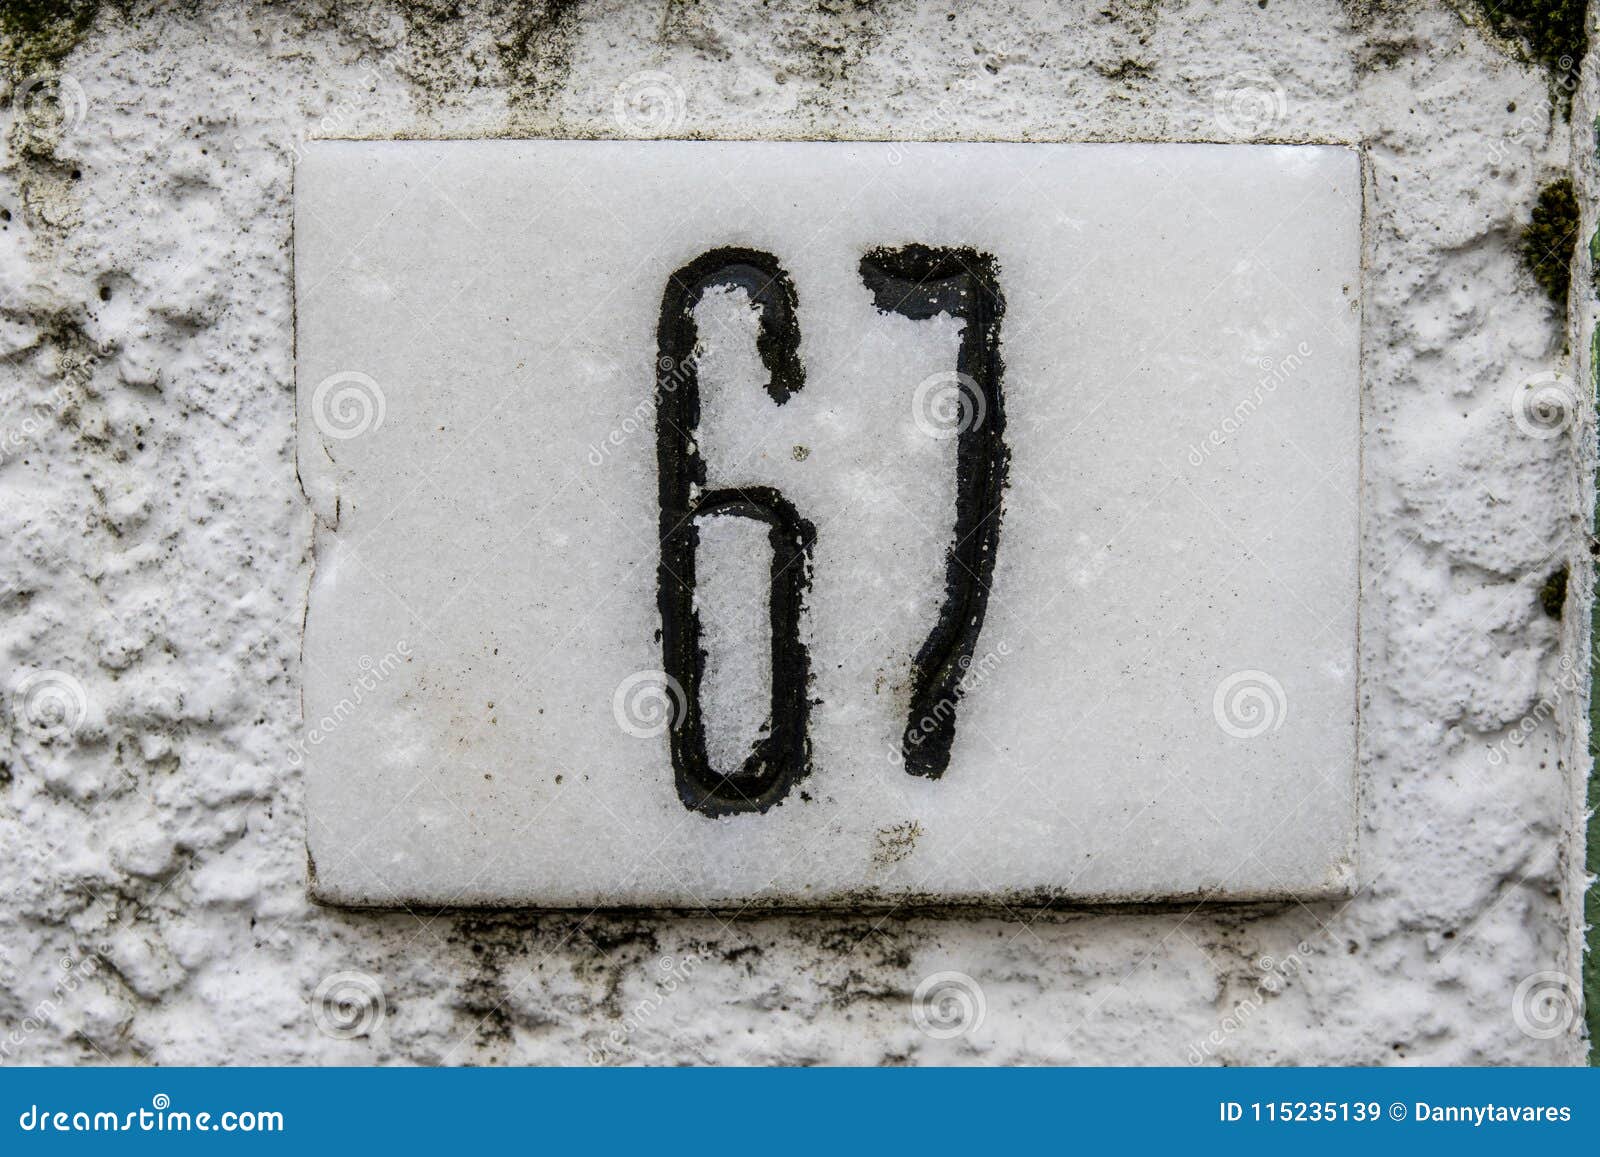 close up of door numbers